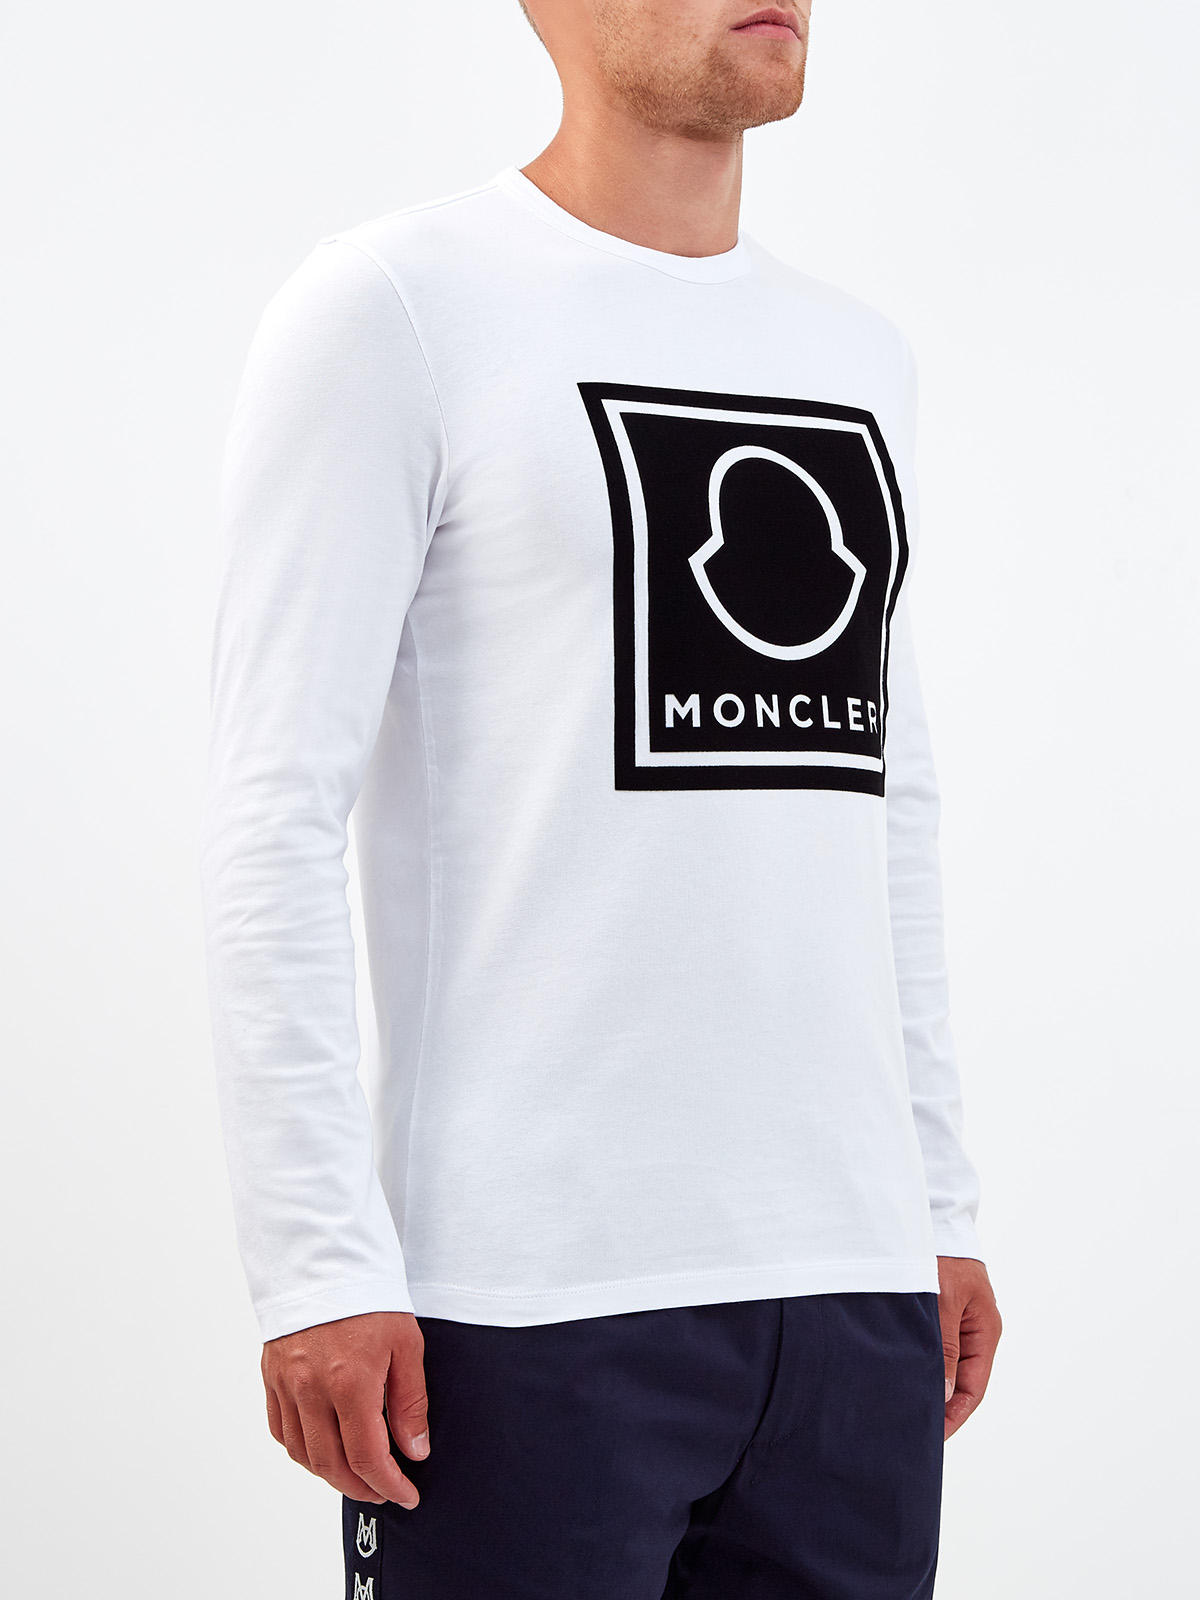 Хлопковый лонгслив с макро-логотипом бренда MONCLER, цвет белый, размер L;2XL;M;XL - фото 3